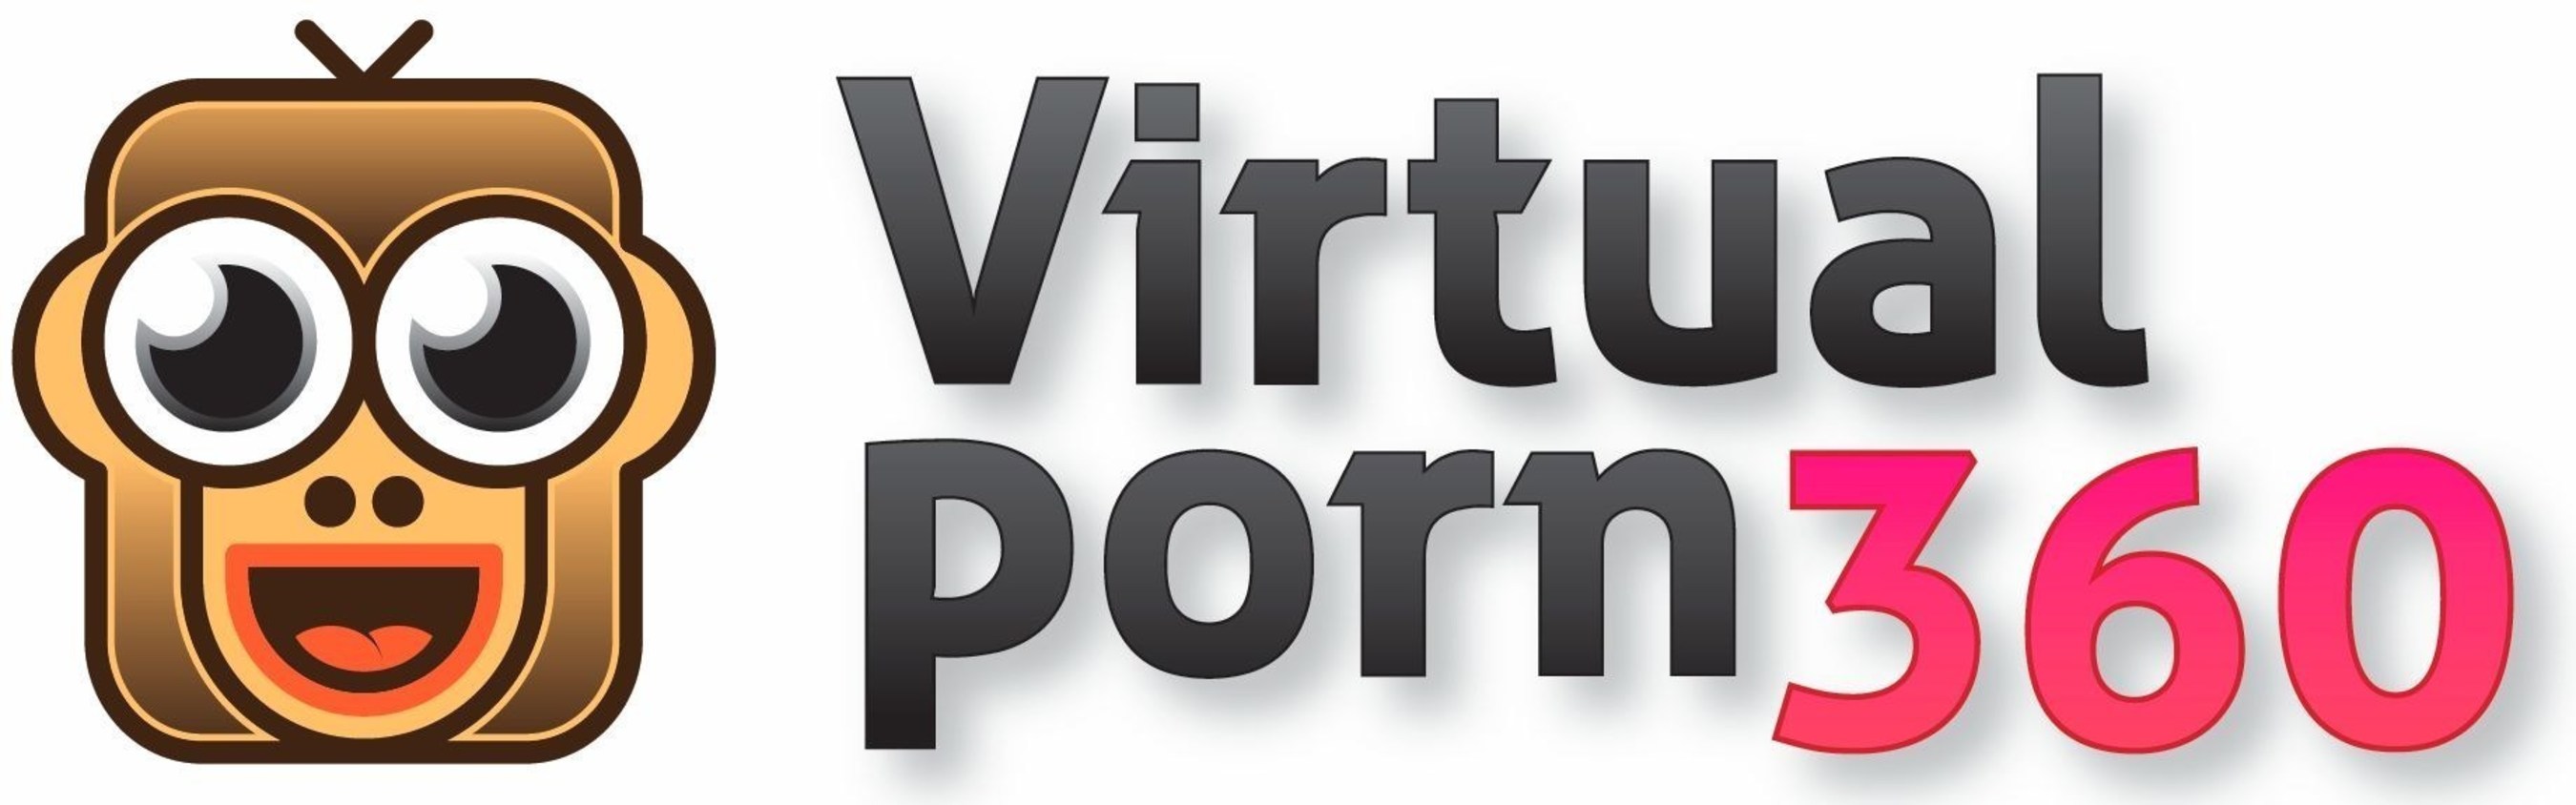 VirtualPorn360 (PRNewsFoto/VirtualPorn360) (PRNewsFoto/VirtualPorn360)